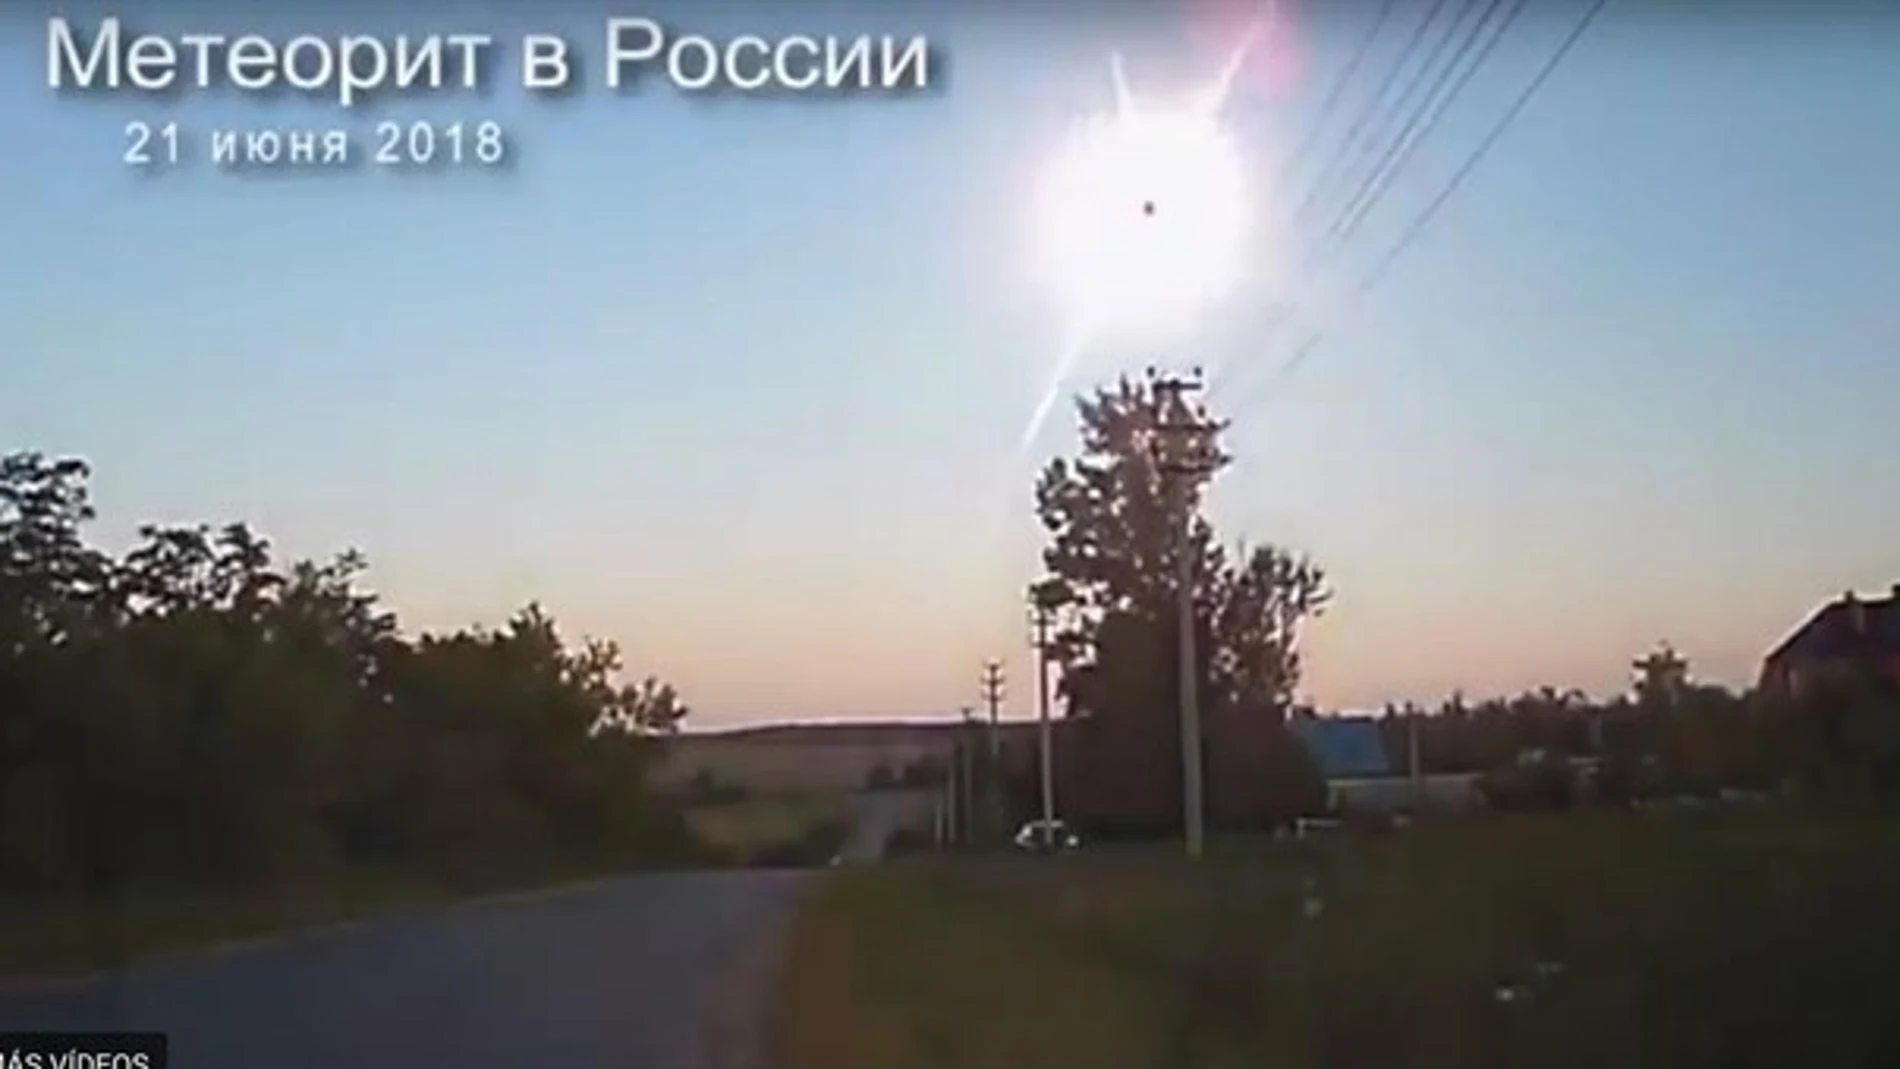 Aunque el meteoroide se desintegró antes de llegar a la Tierra, algunos pedazos pequeños pueden estar cerca de la región cerca de la explosión / Foto:Youtube